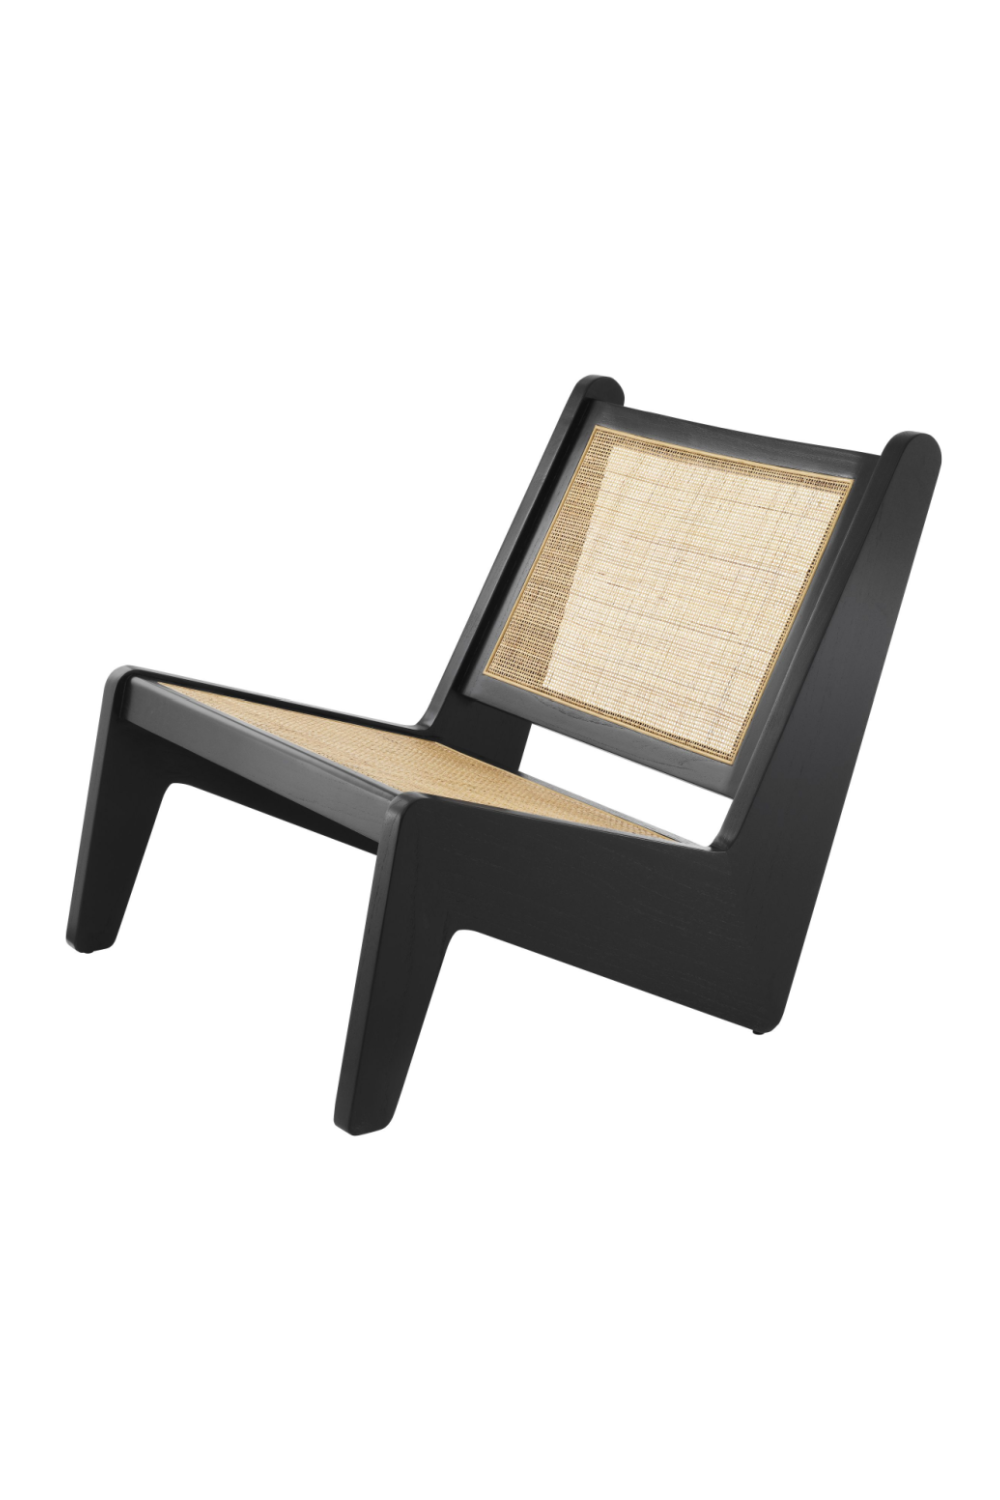 Modern Rattan Accent Chair | Eichholtz Aubin | Oroa.com